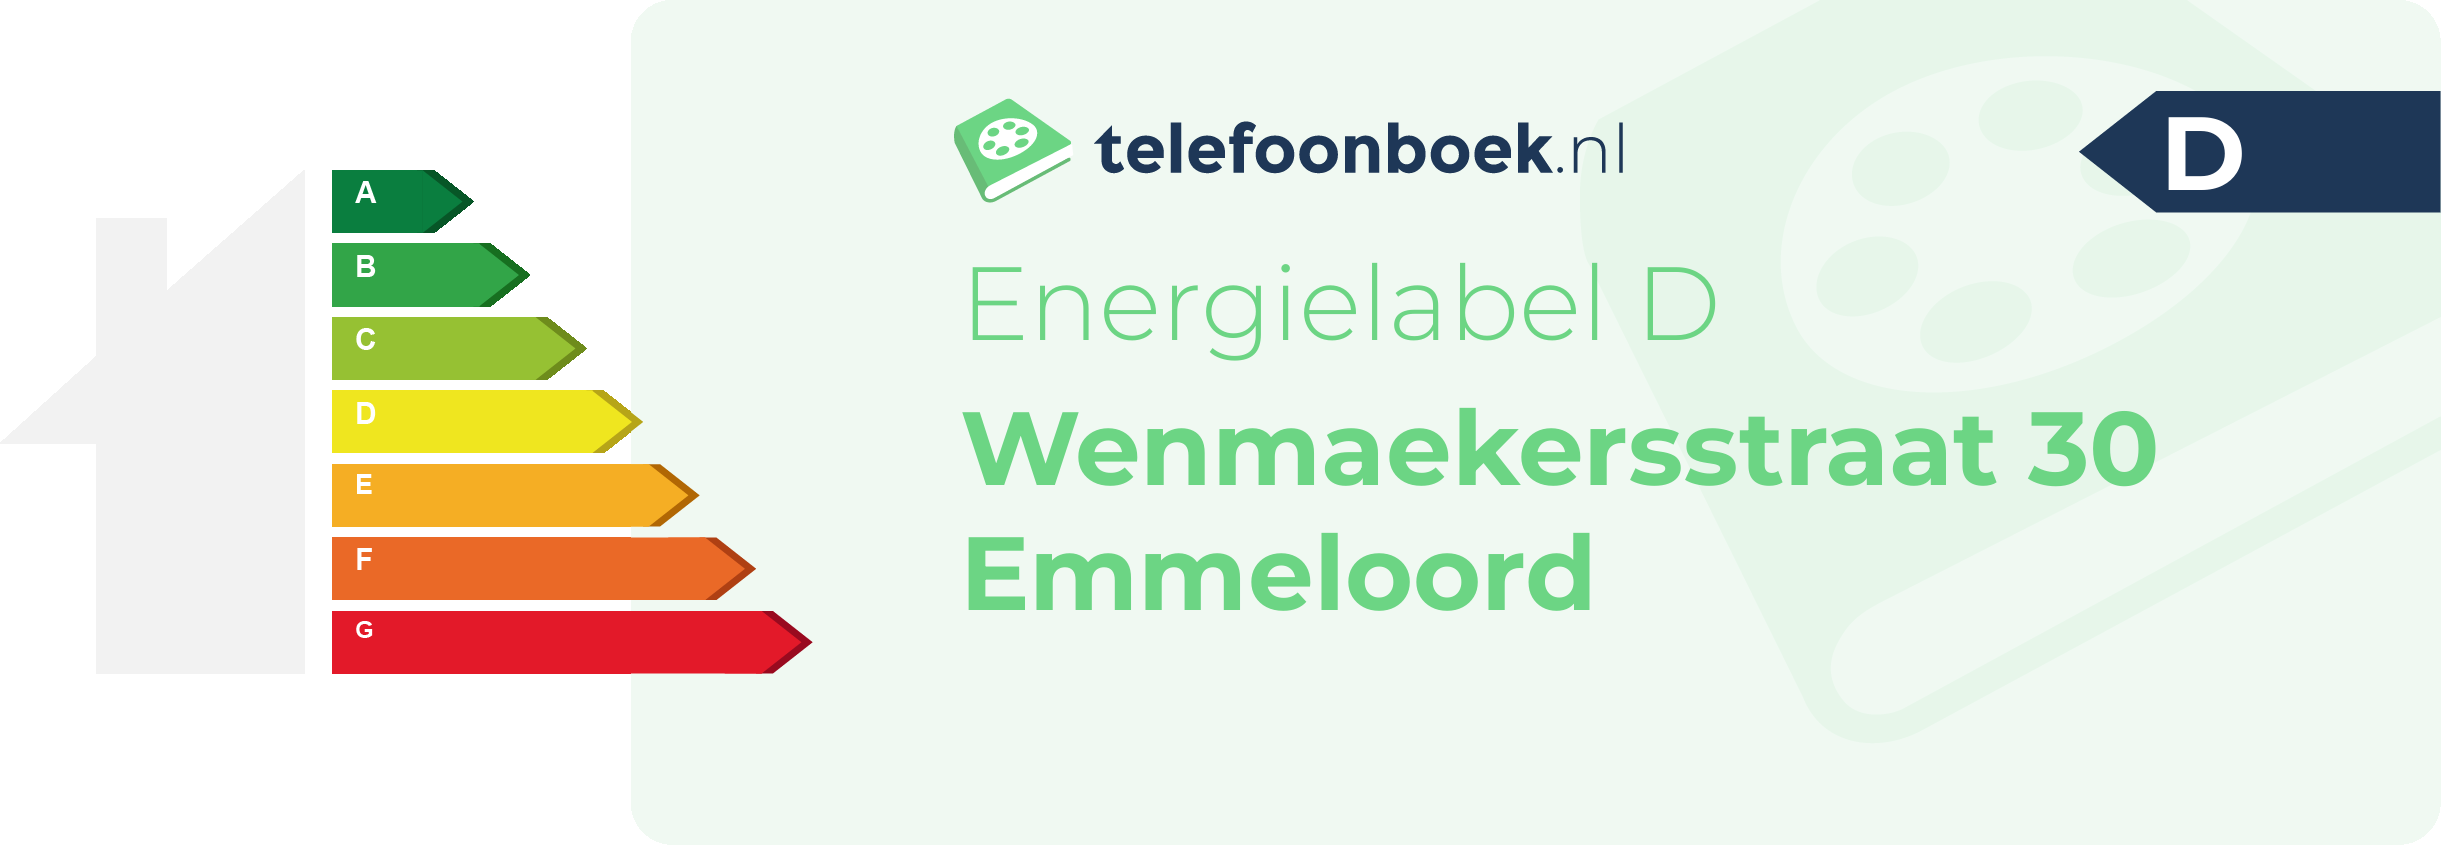 Energielabel Wenmaekersstraat 30 Emmeloord